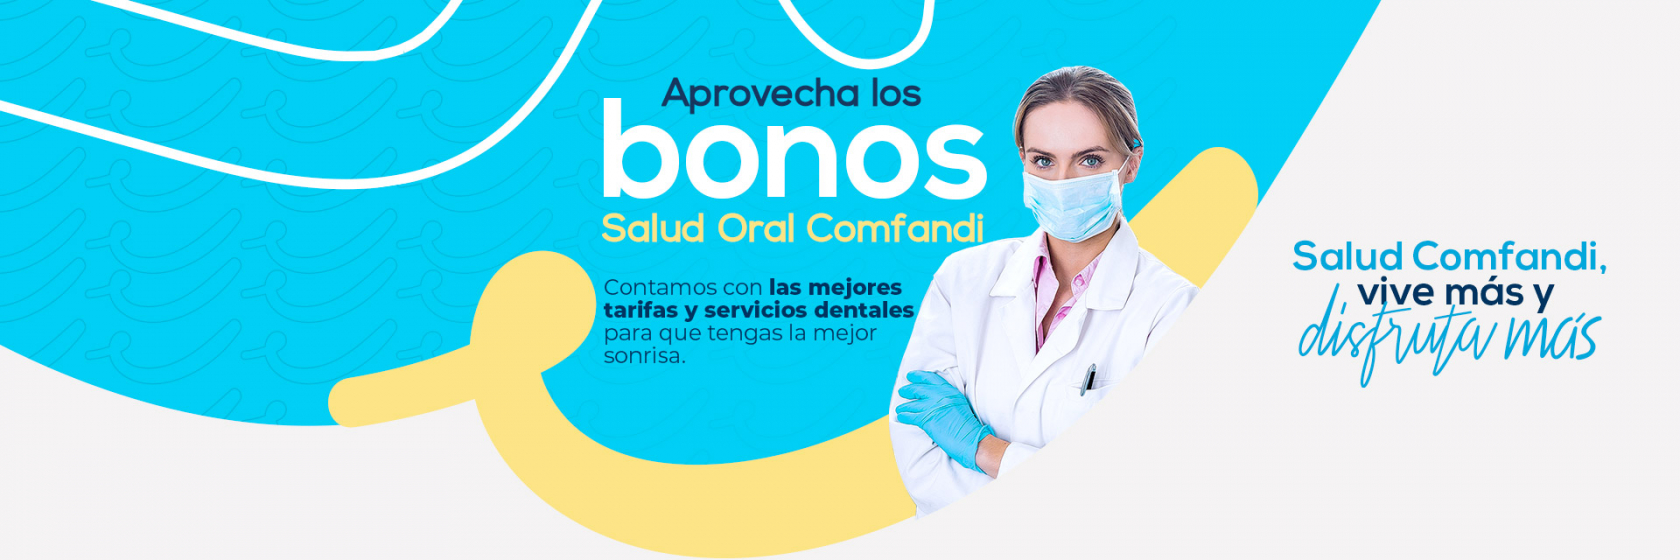 Banner bonos salud oral